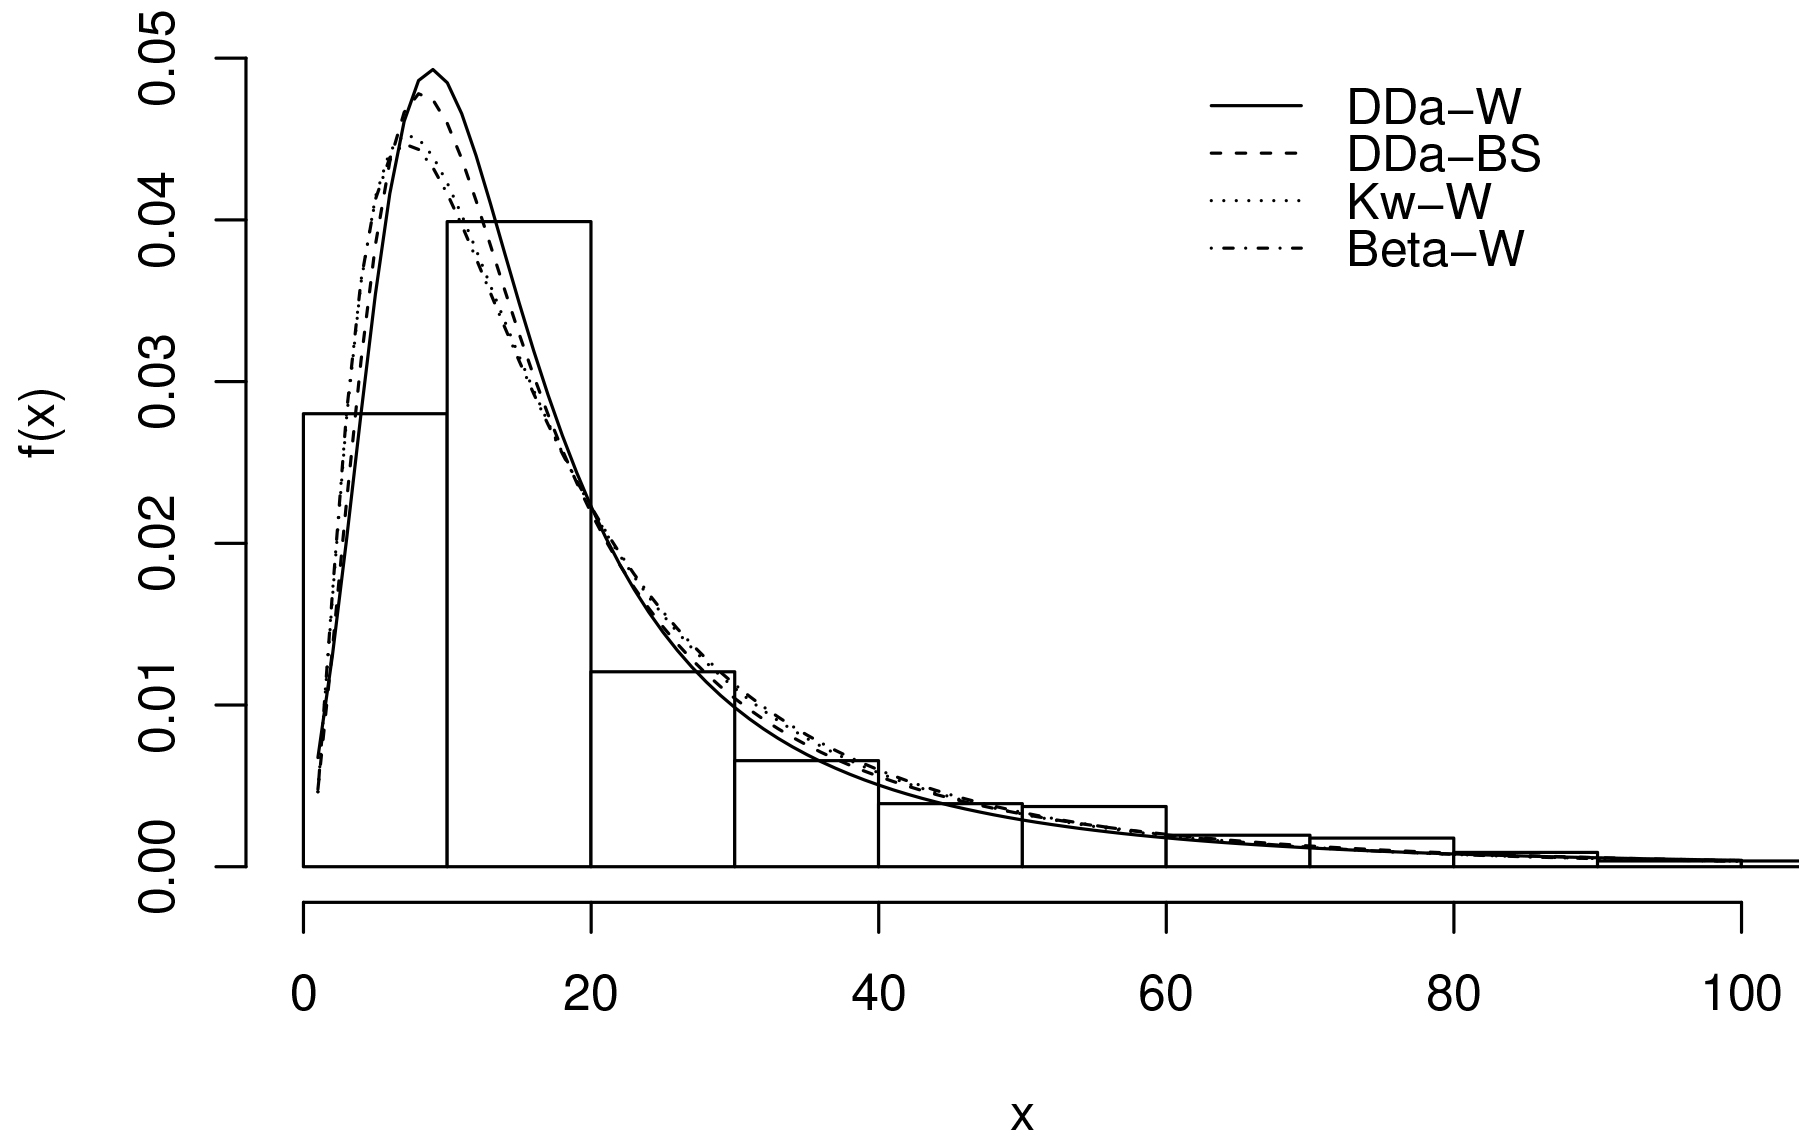 Estimated DDa-W, DDa-BS, Kw-W and Beta-W densities.